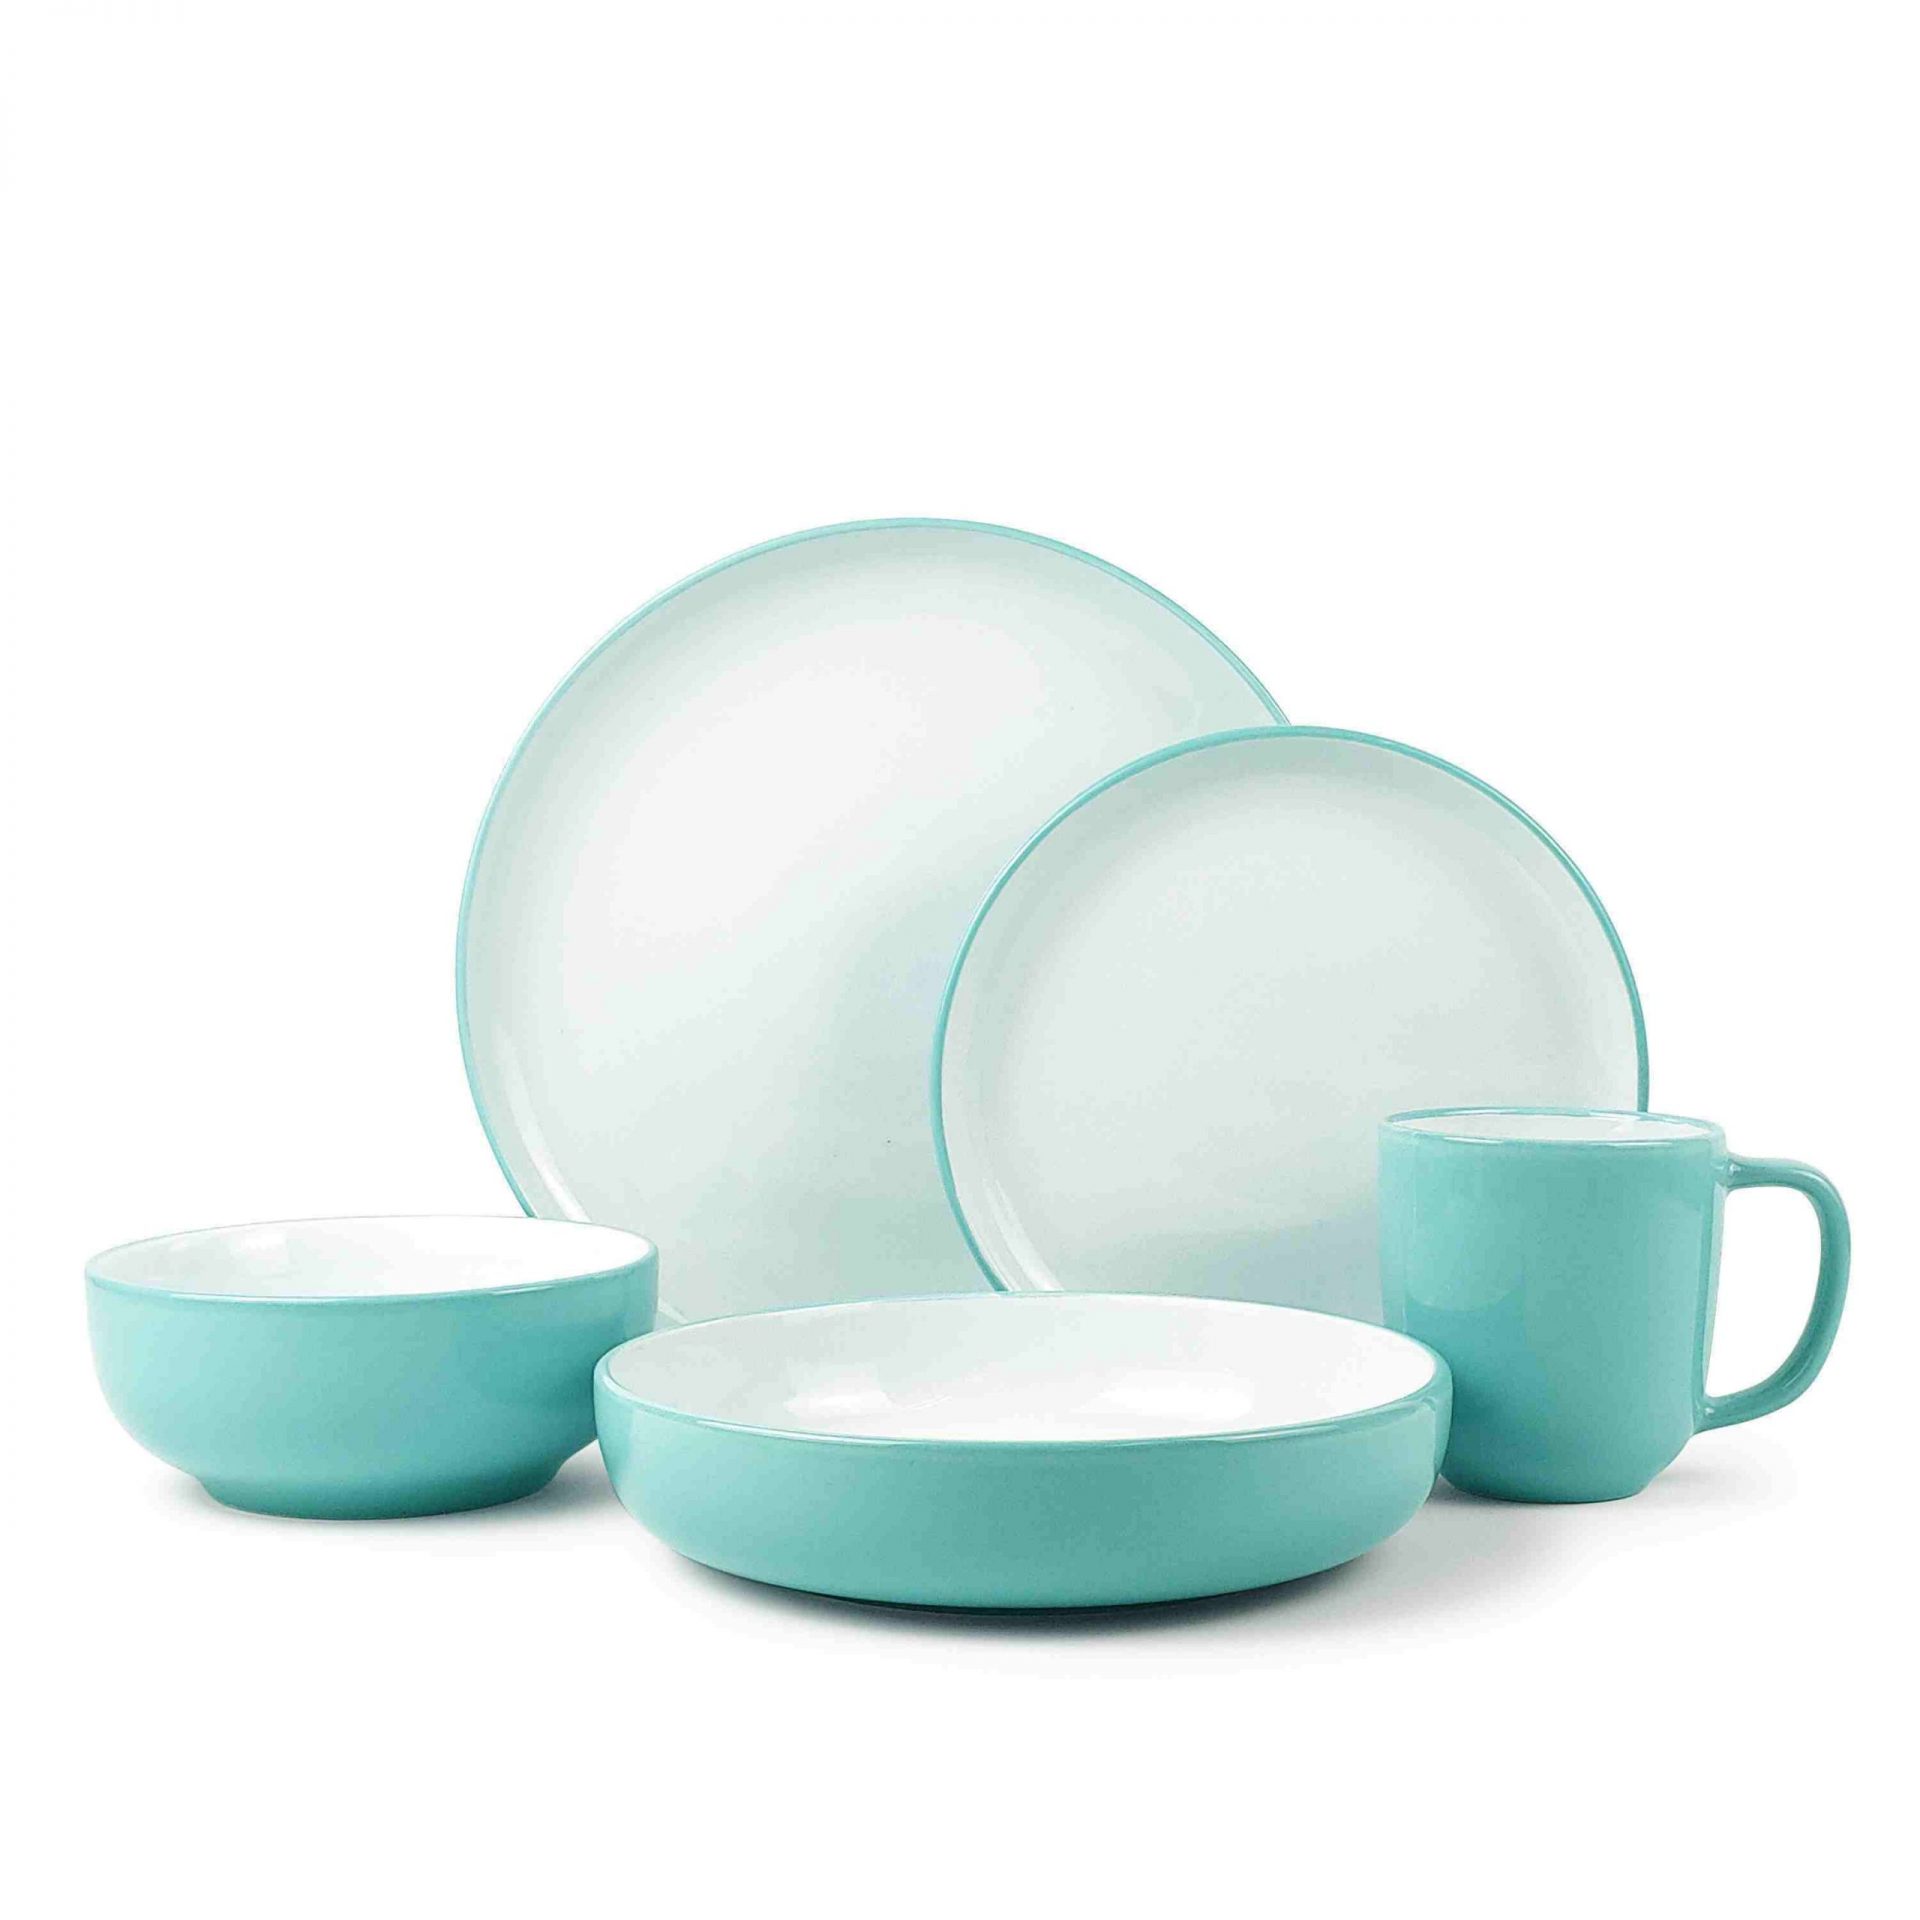 2 tone stoneware dinnerware set